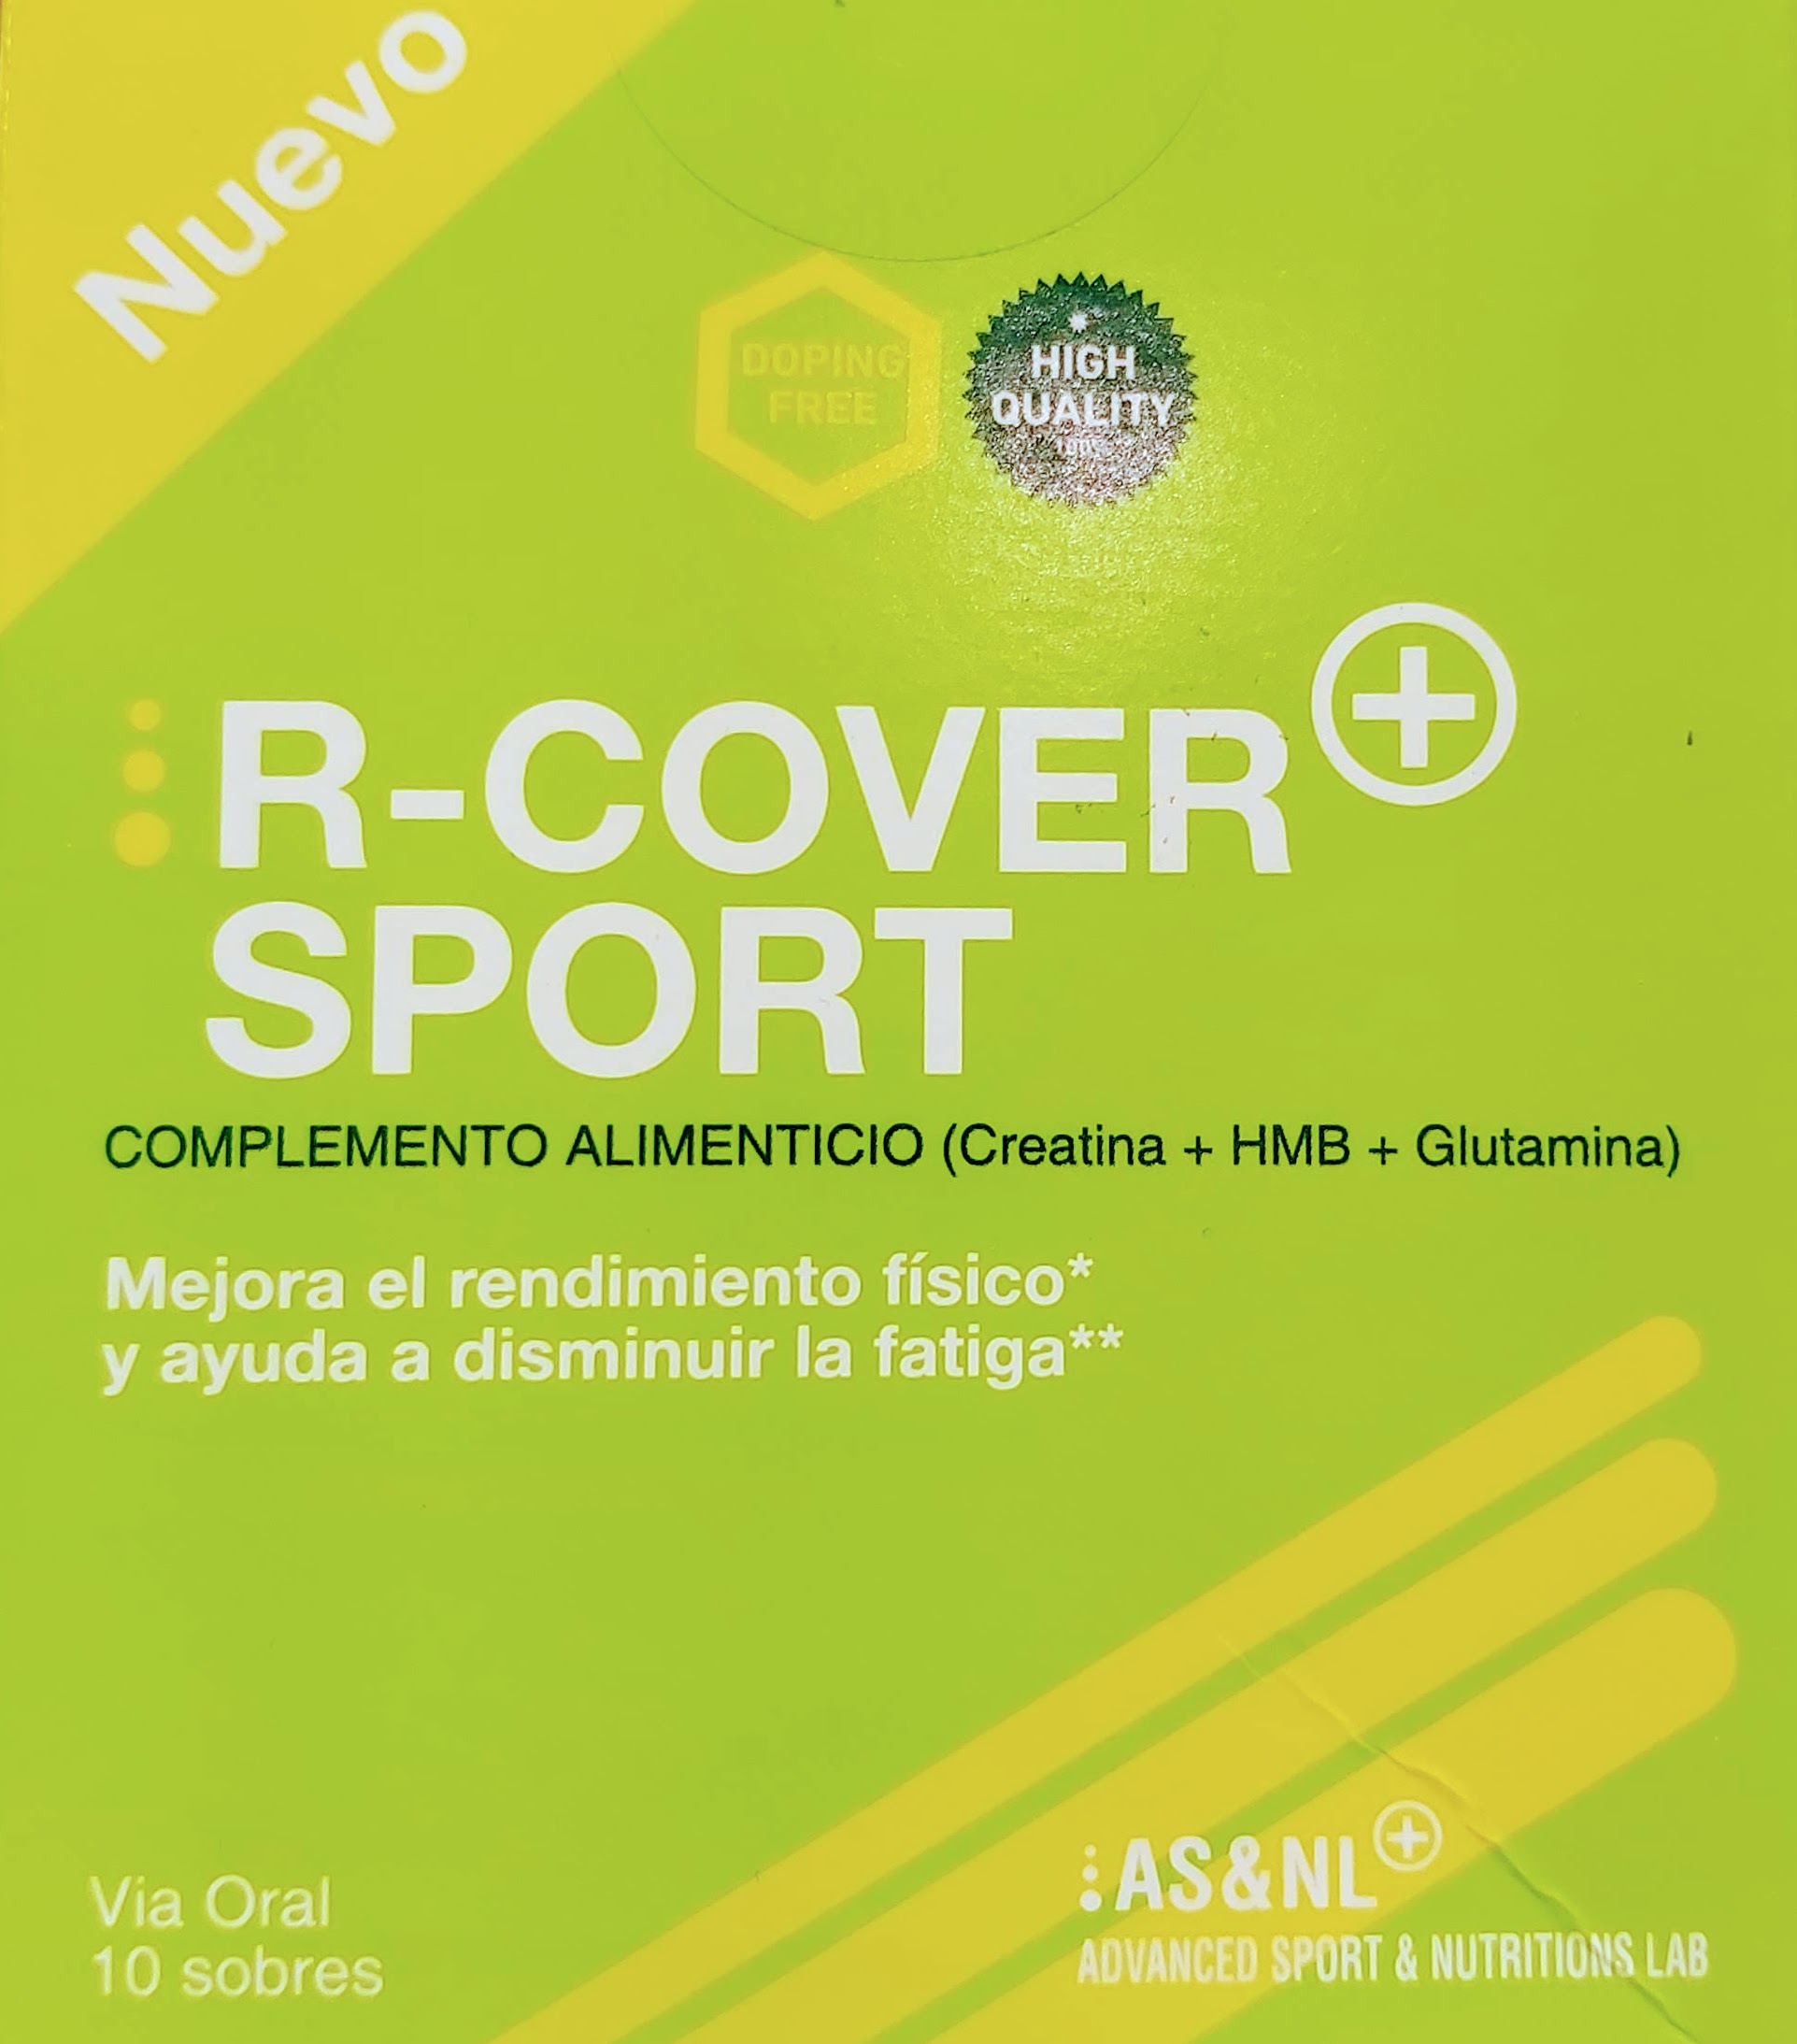 Comprar R-COVER + es un producto ideal para la recuperación de la masa muscular, ayuda a los deportistas a evitar lesiones y mejorar las recuperaciones aporta todos los nutrientes esenciales para mantener fuertes y sanos los músculos y rendir al máximo